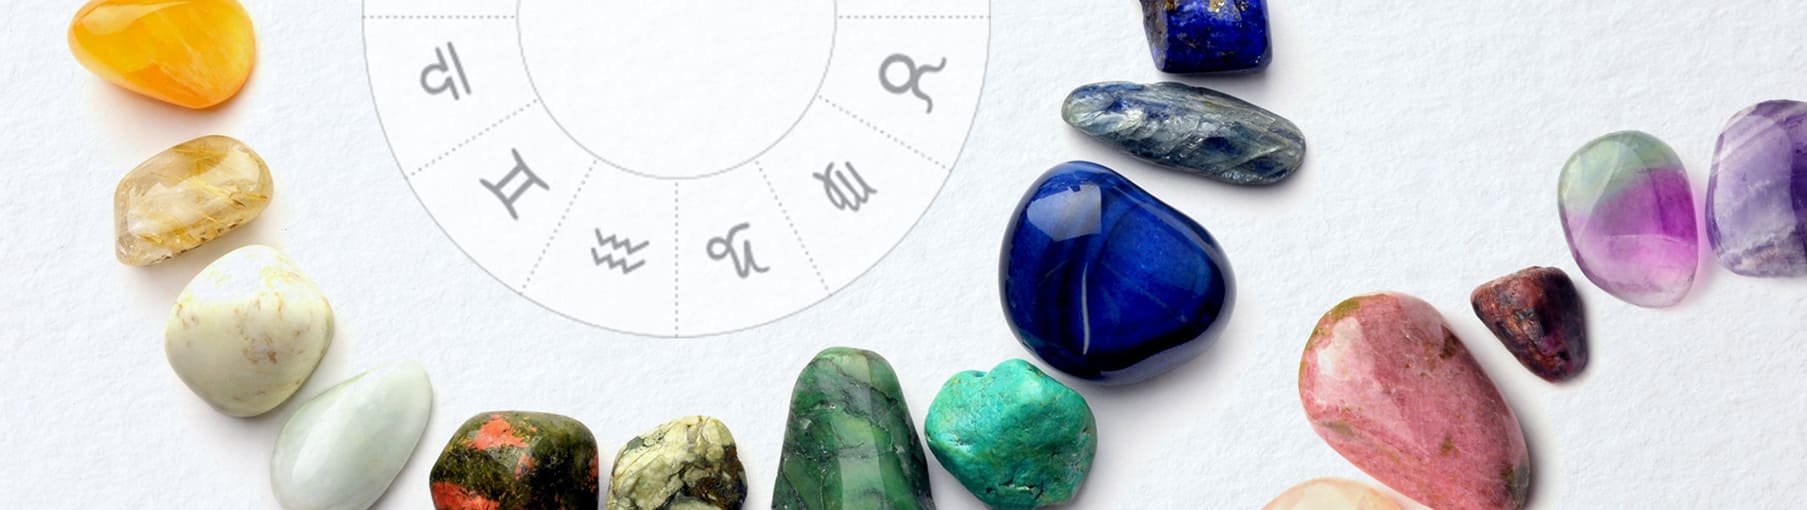 Камень хризолит: магические свойства, которые подходят для женщин по знаку зодиака